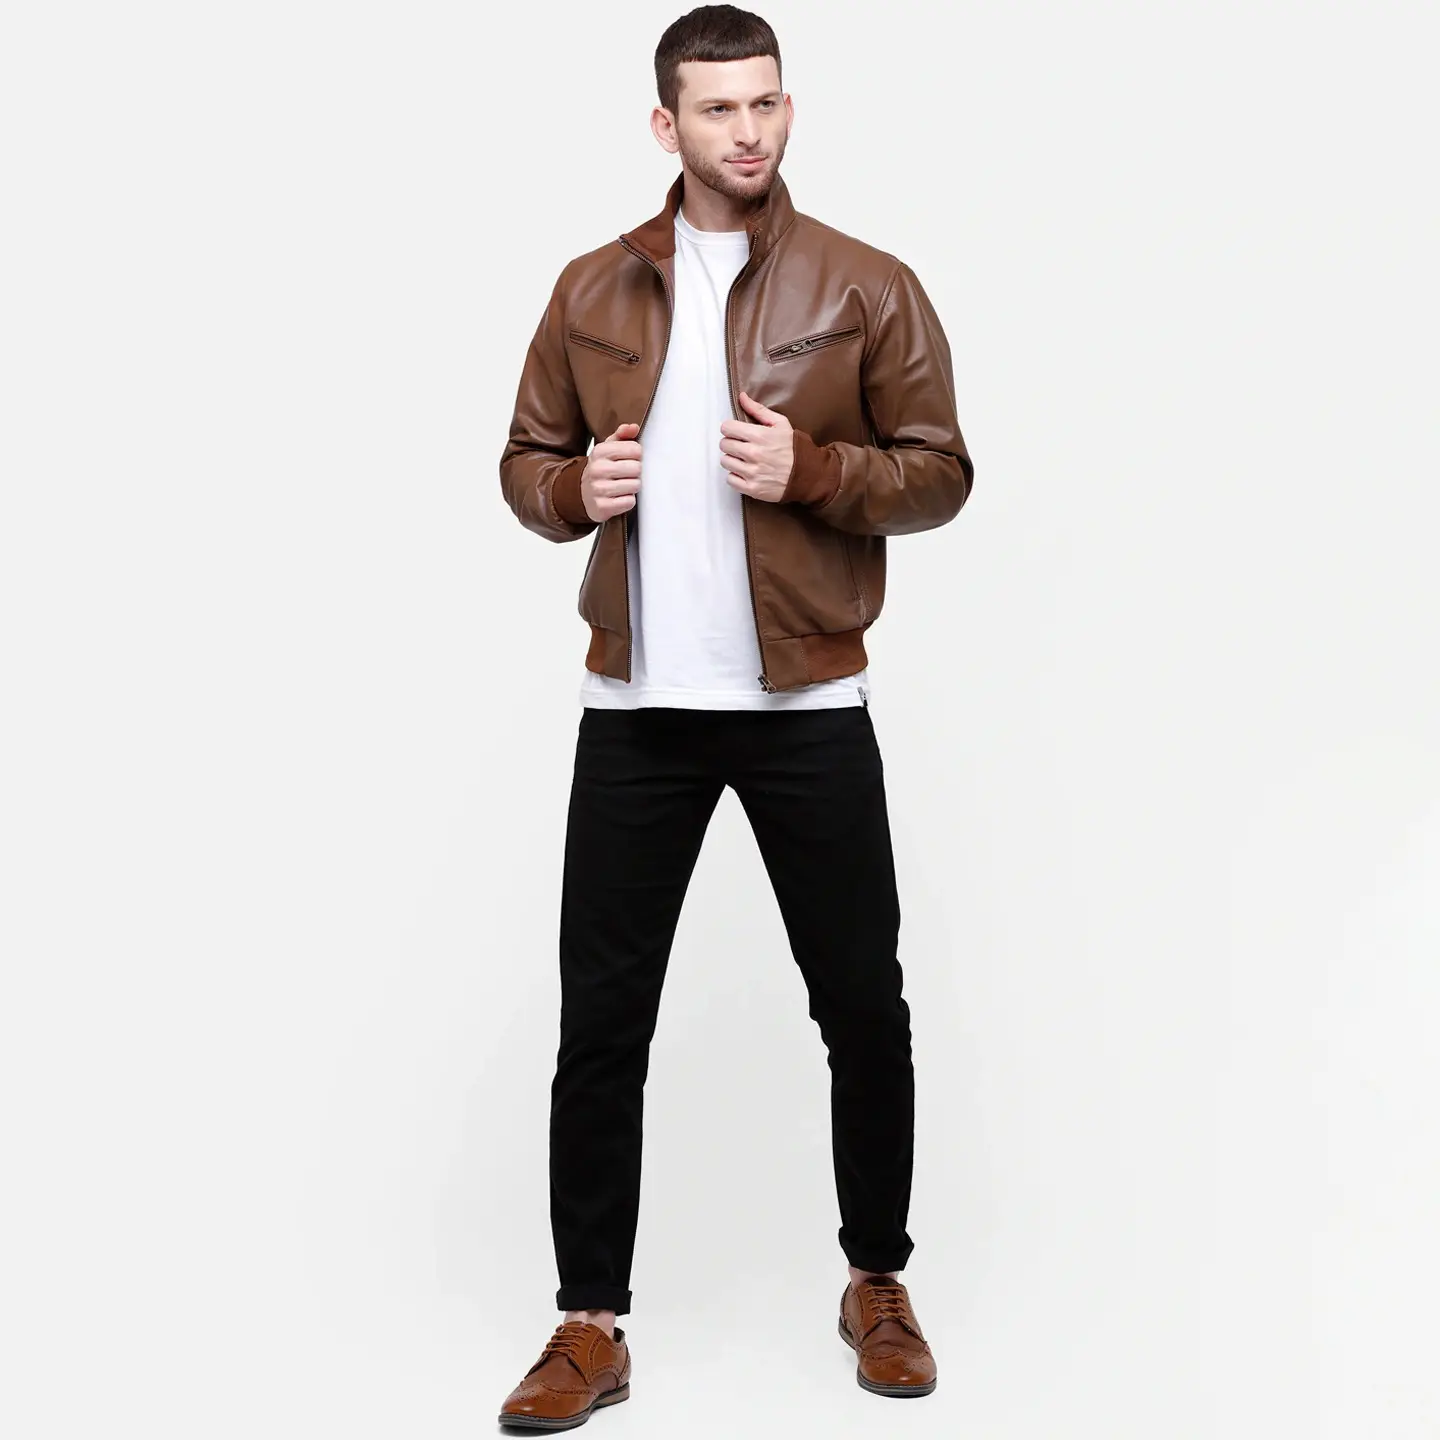 नई फैशन डिजाइन लड़कों क्लासिक जैकेट चमड़े पुरुषों की स्लिम फिट चमड़े के कोट पुरुषों जैकेट के लिए